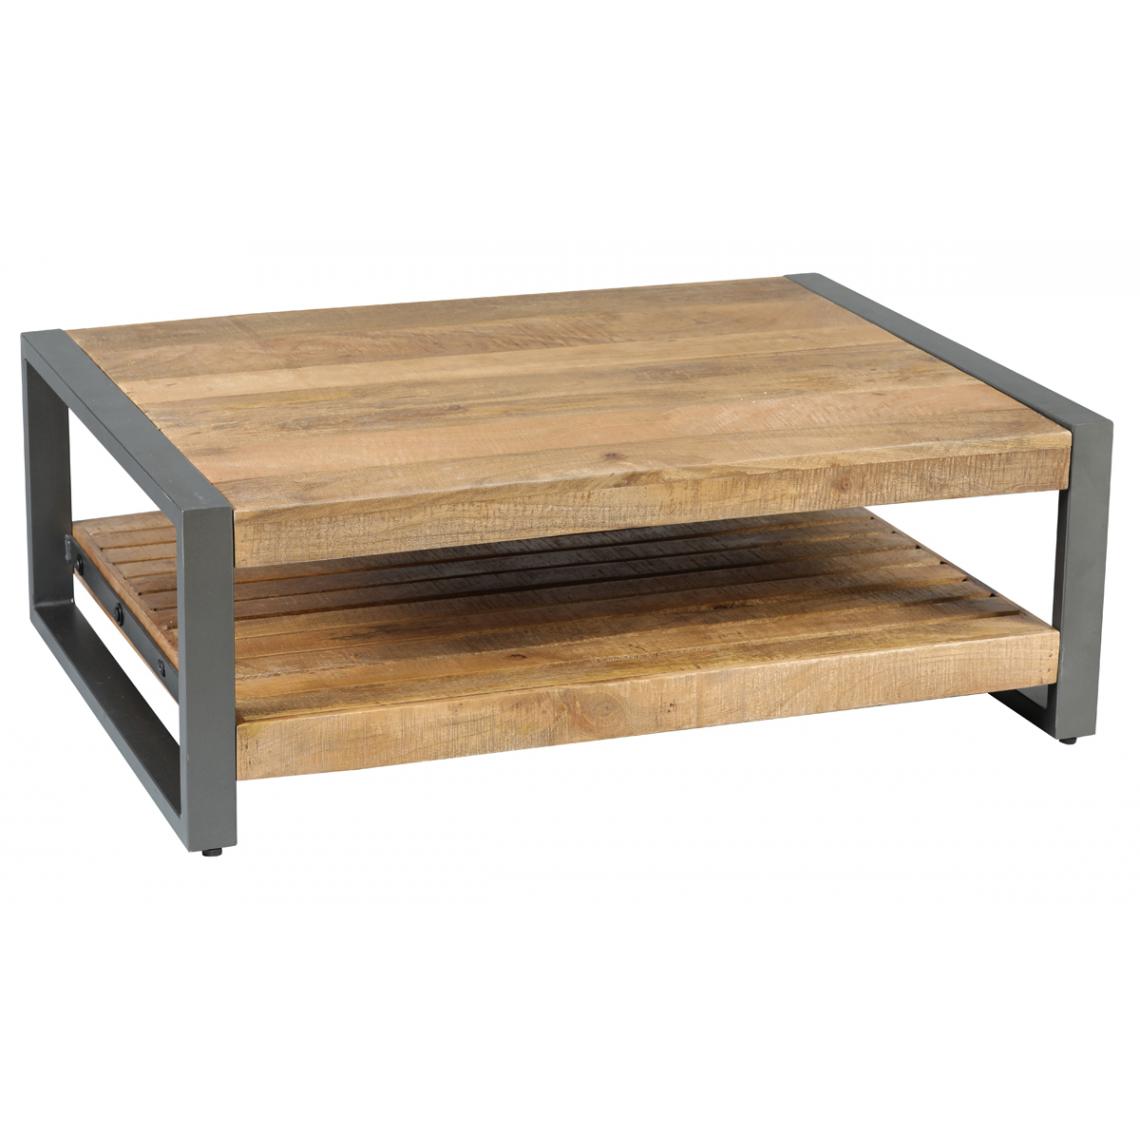 Pegane - Table basse en bois de palissandre et acier coloris naturel / noir - Longueur 100 x Profondeur 75 x hauteur 35 cm - Tables basses